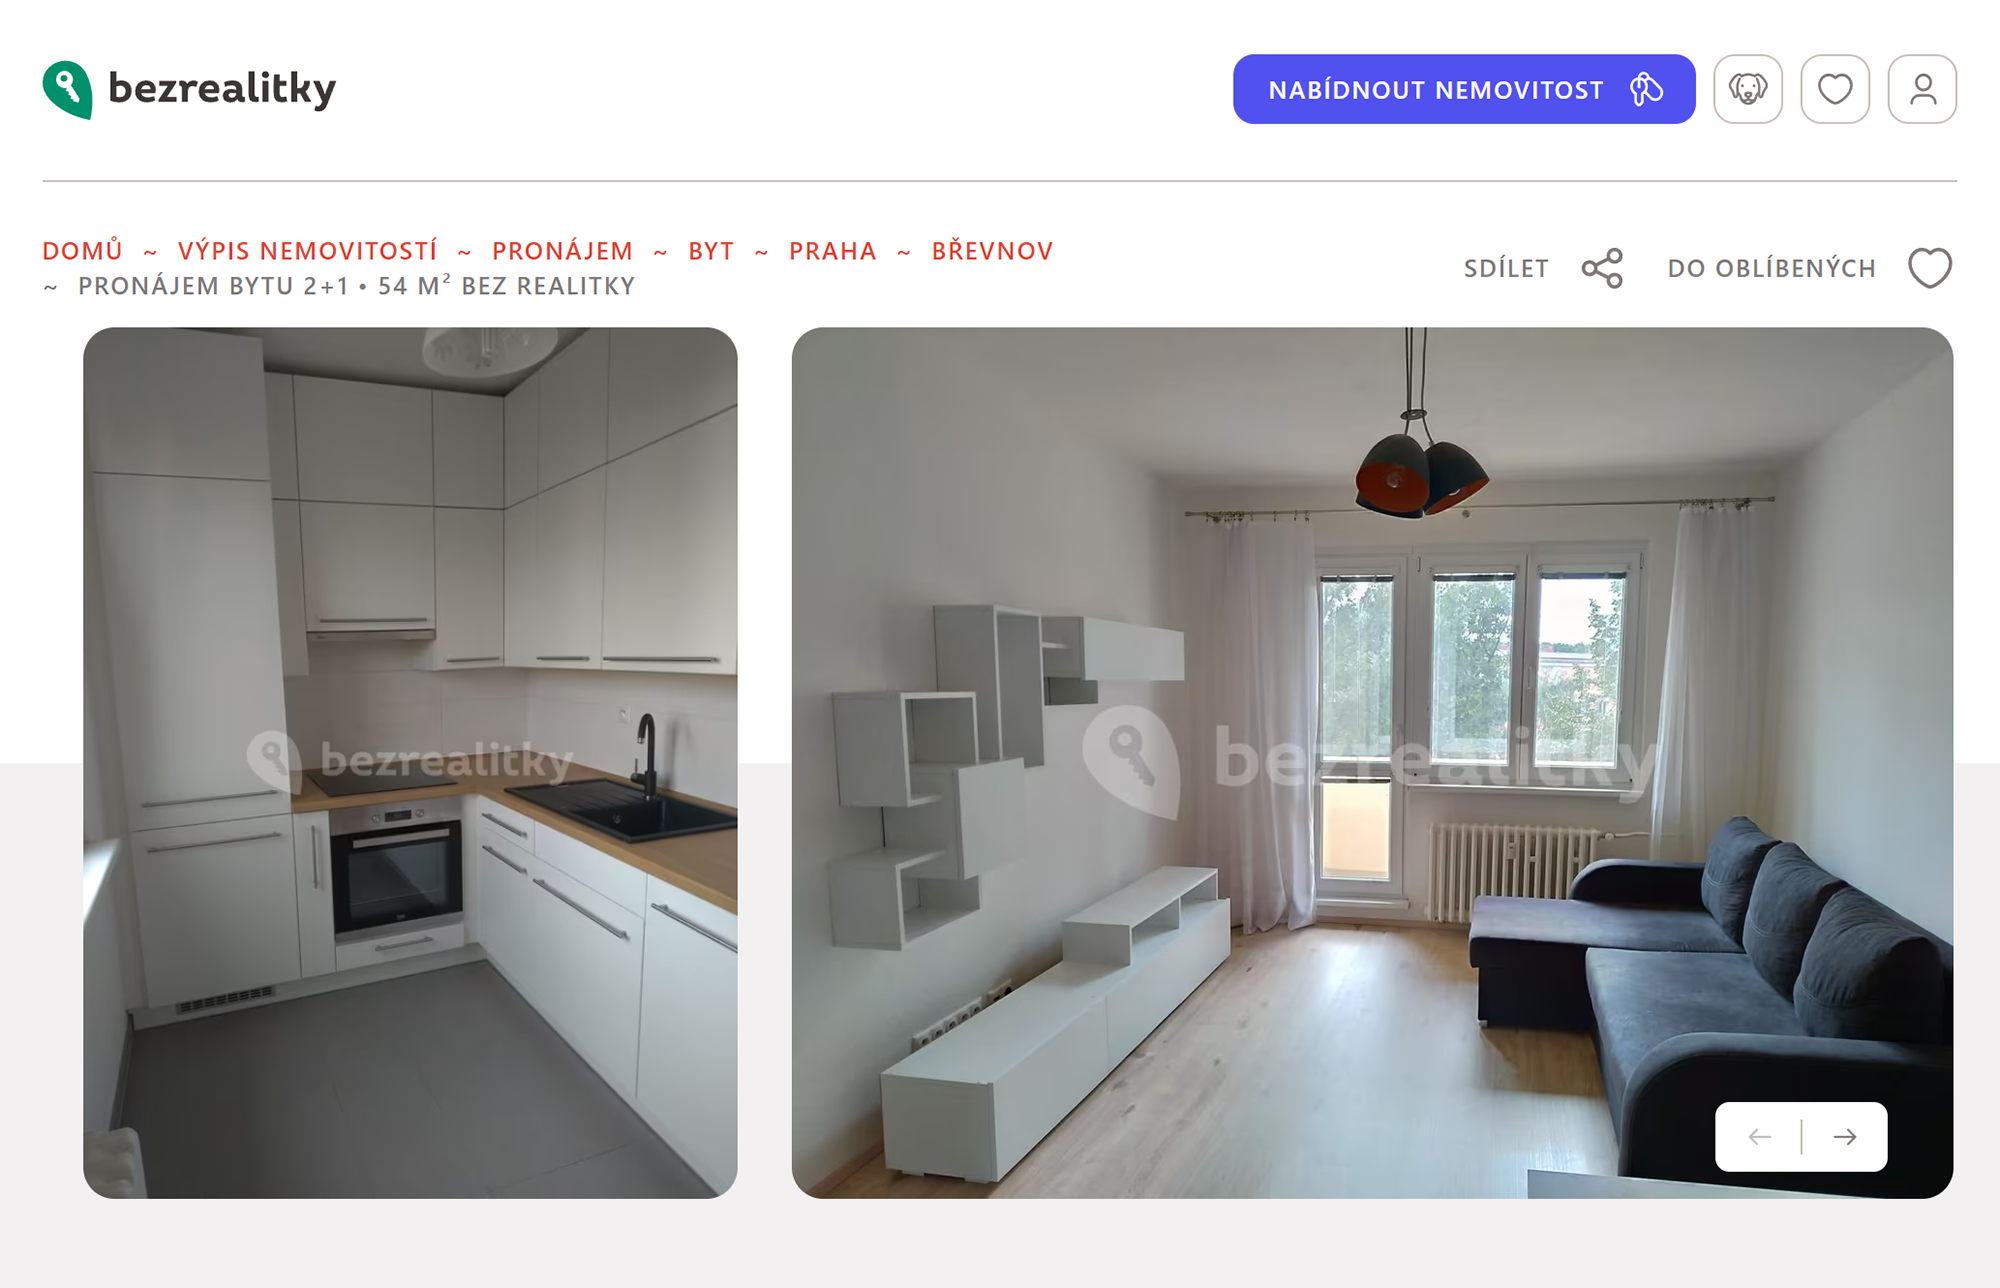 Двухкомнатная квартира с мебелью за 18 000 крон в хорошем районе Праги — Břevnov. Коммунальные платежи — еще 6000 крон в месяц